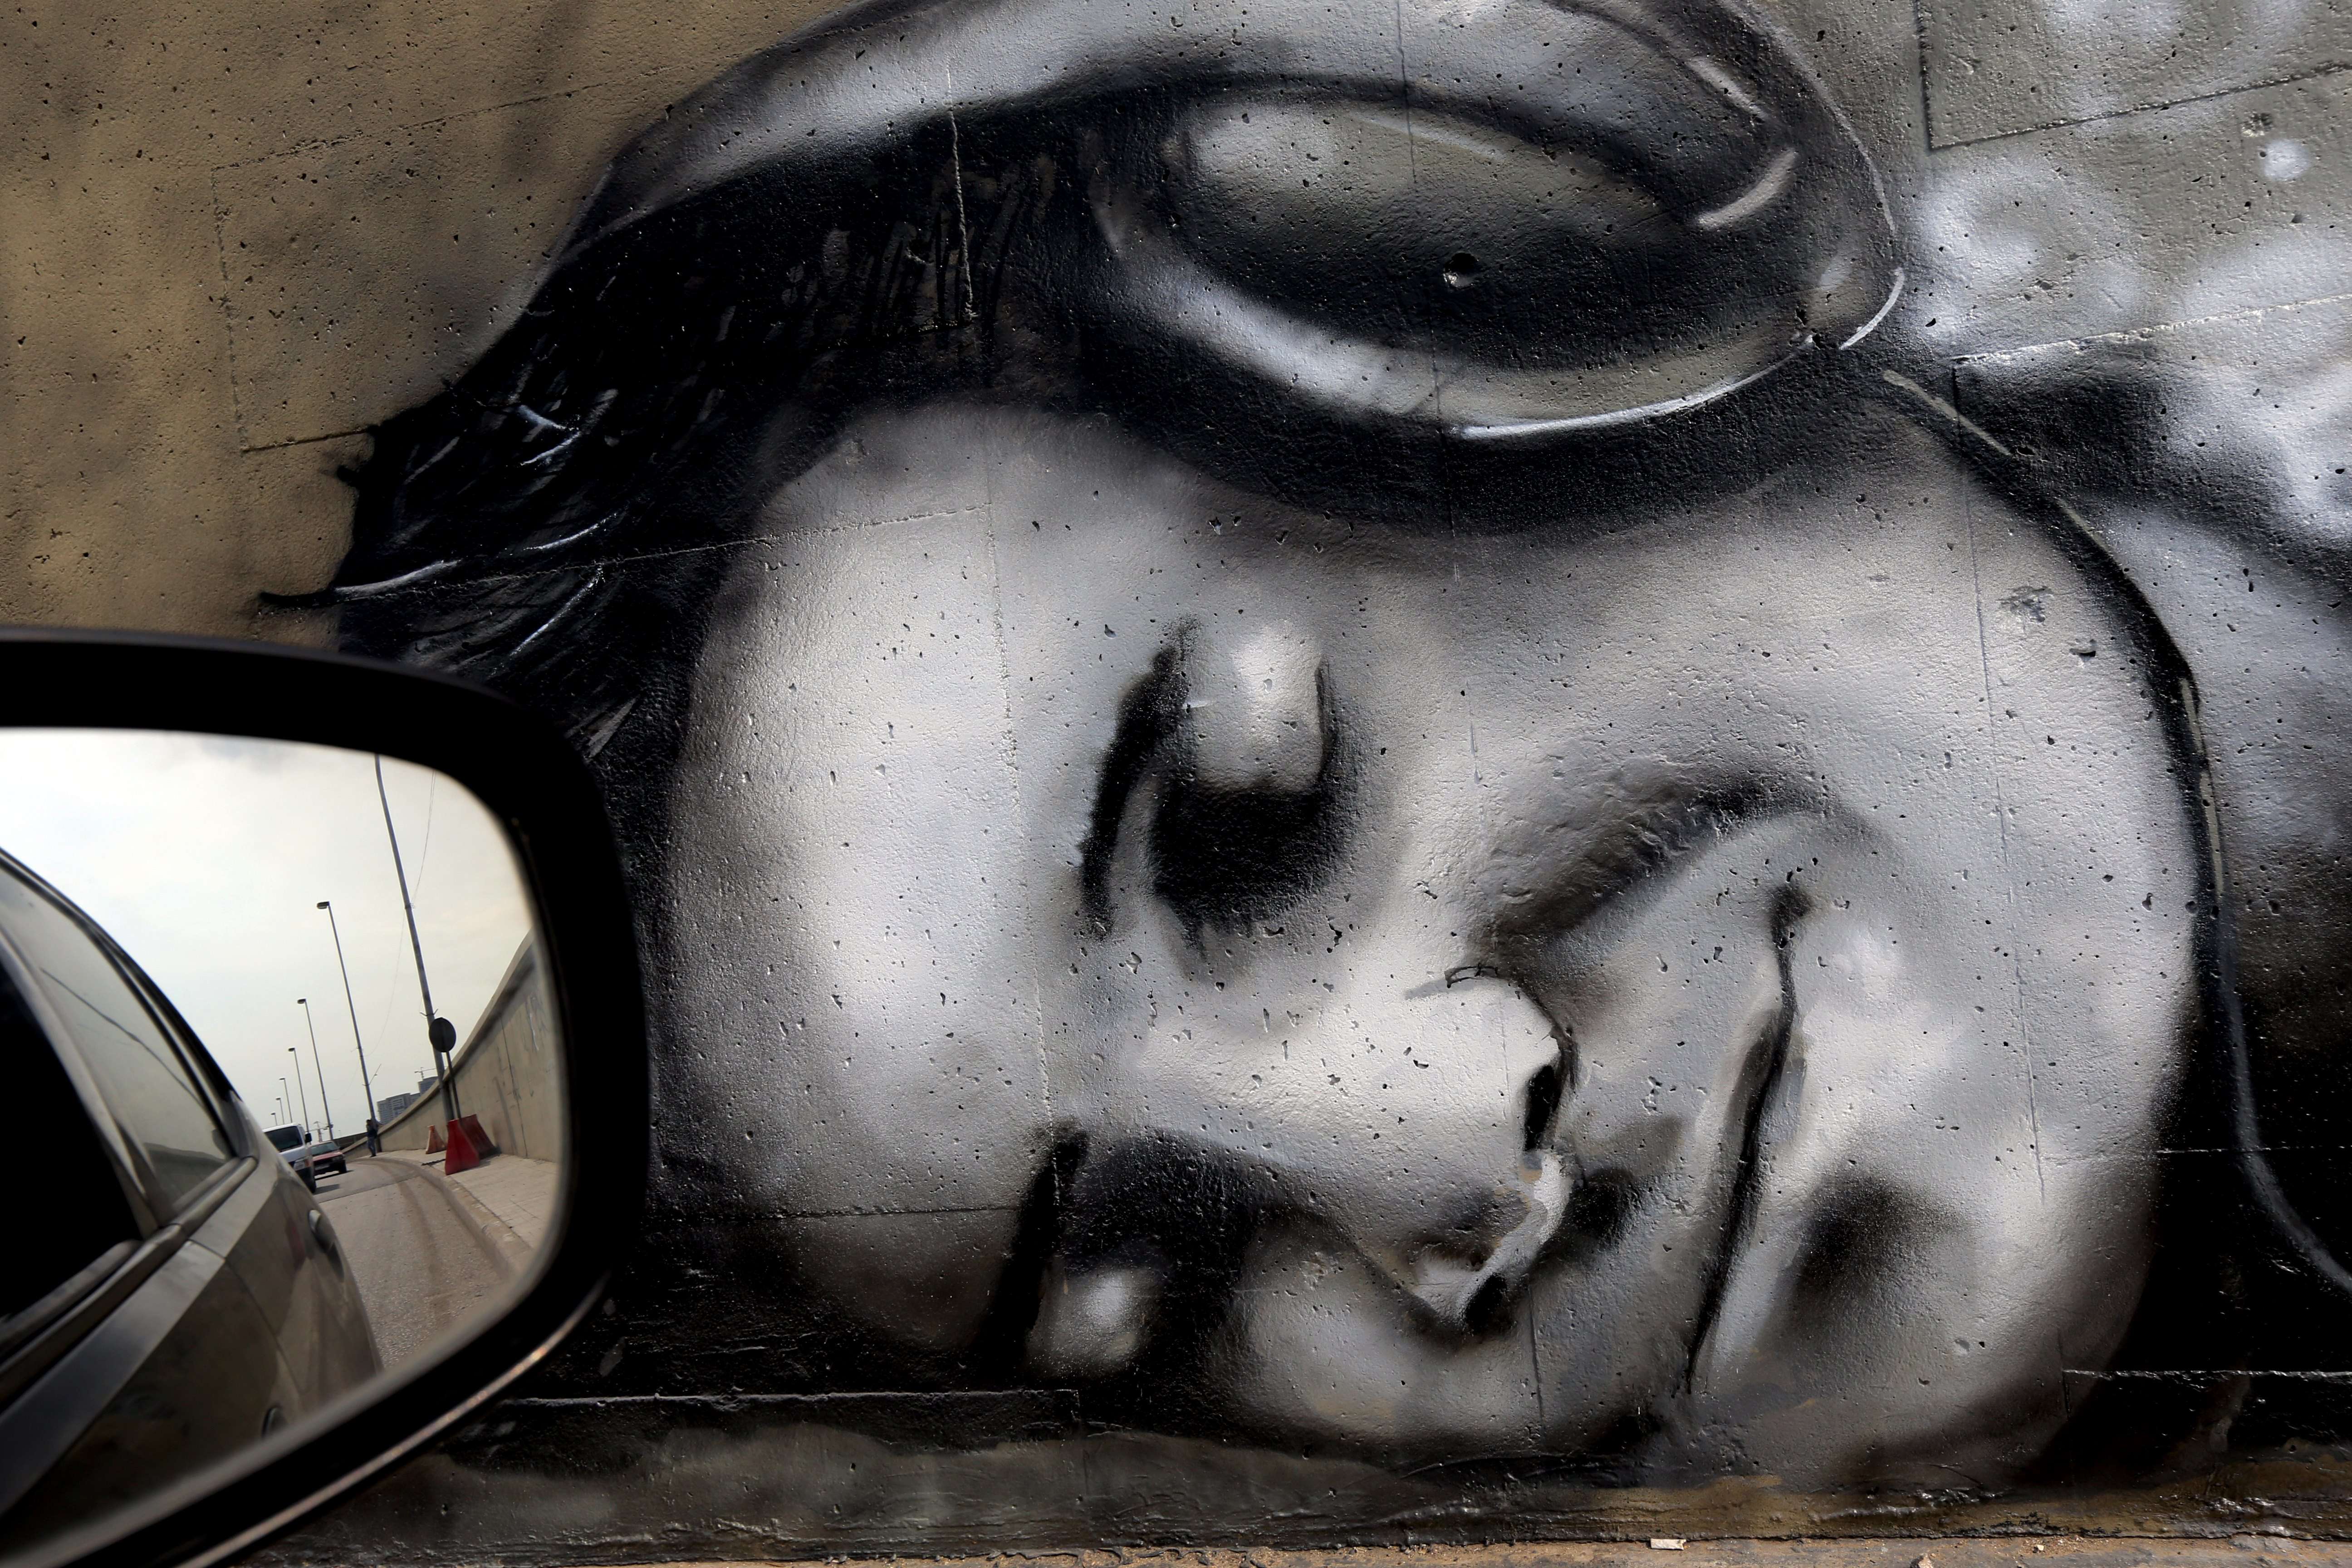 Street art in Lebanon 